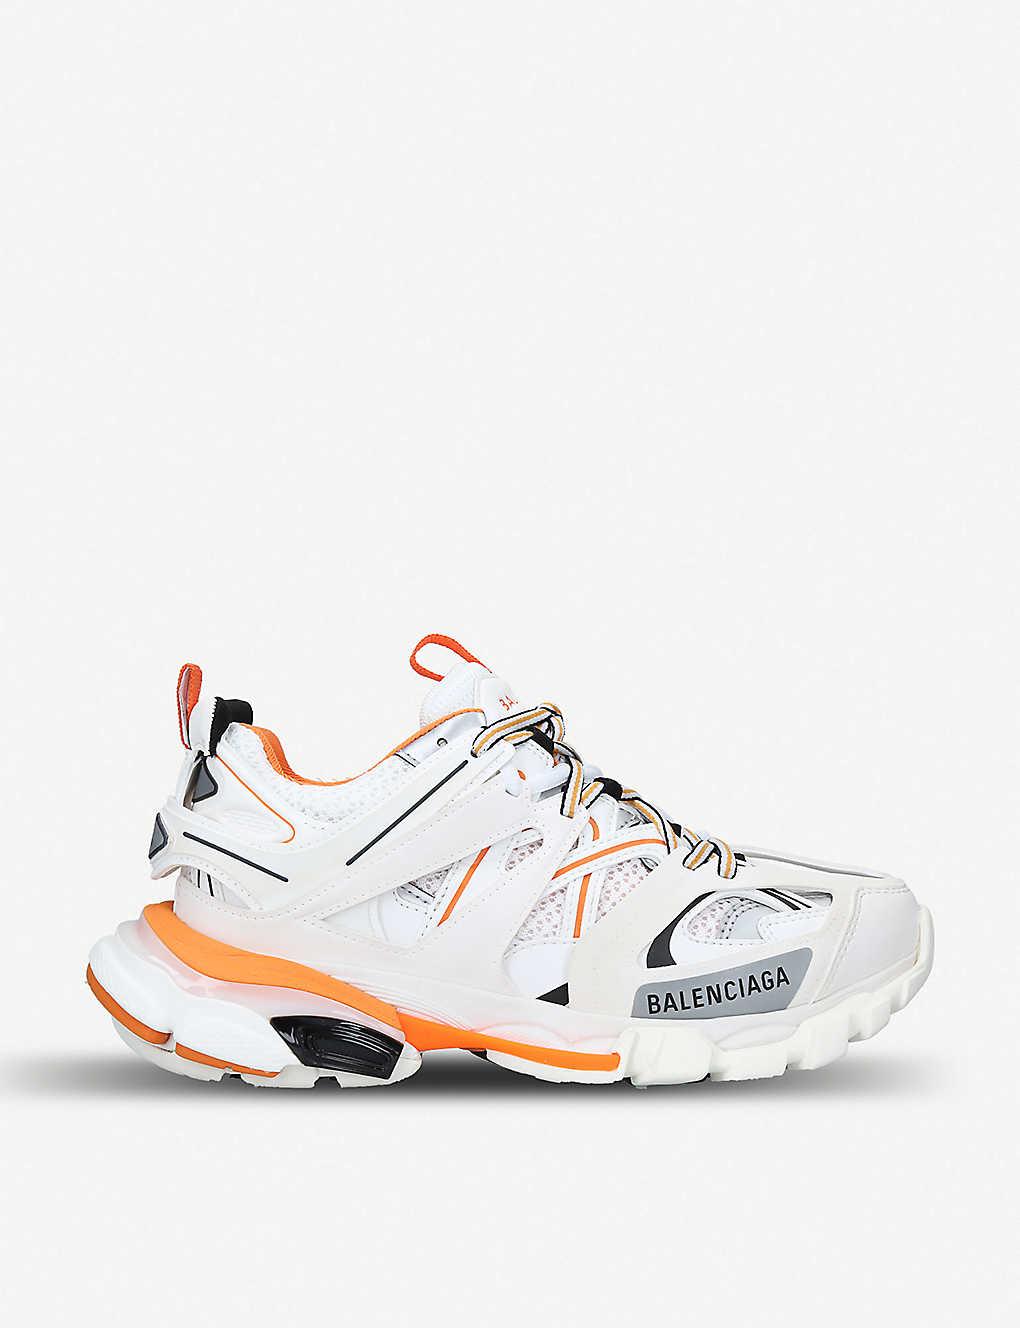 Balenciaga Rubber Track Sneaker in White / Orange (White) - Save 